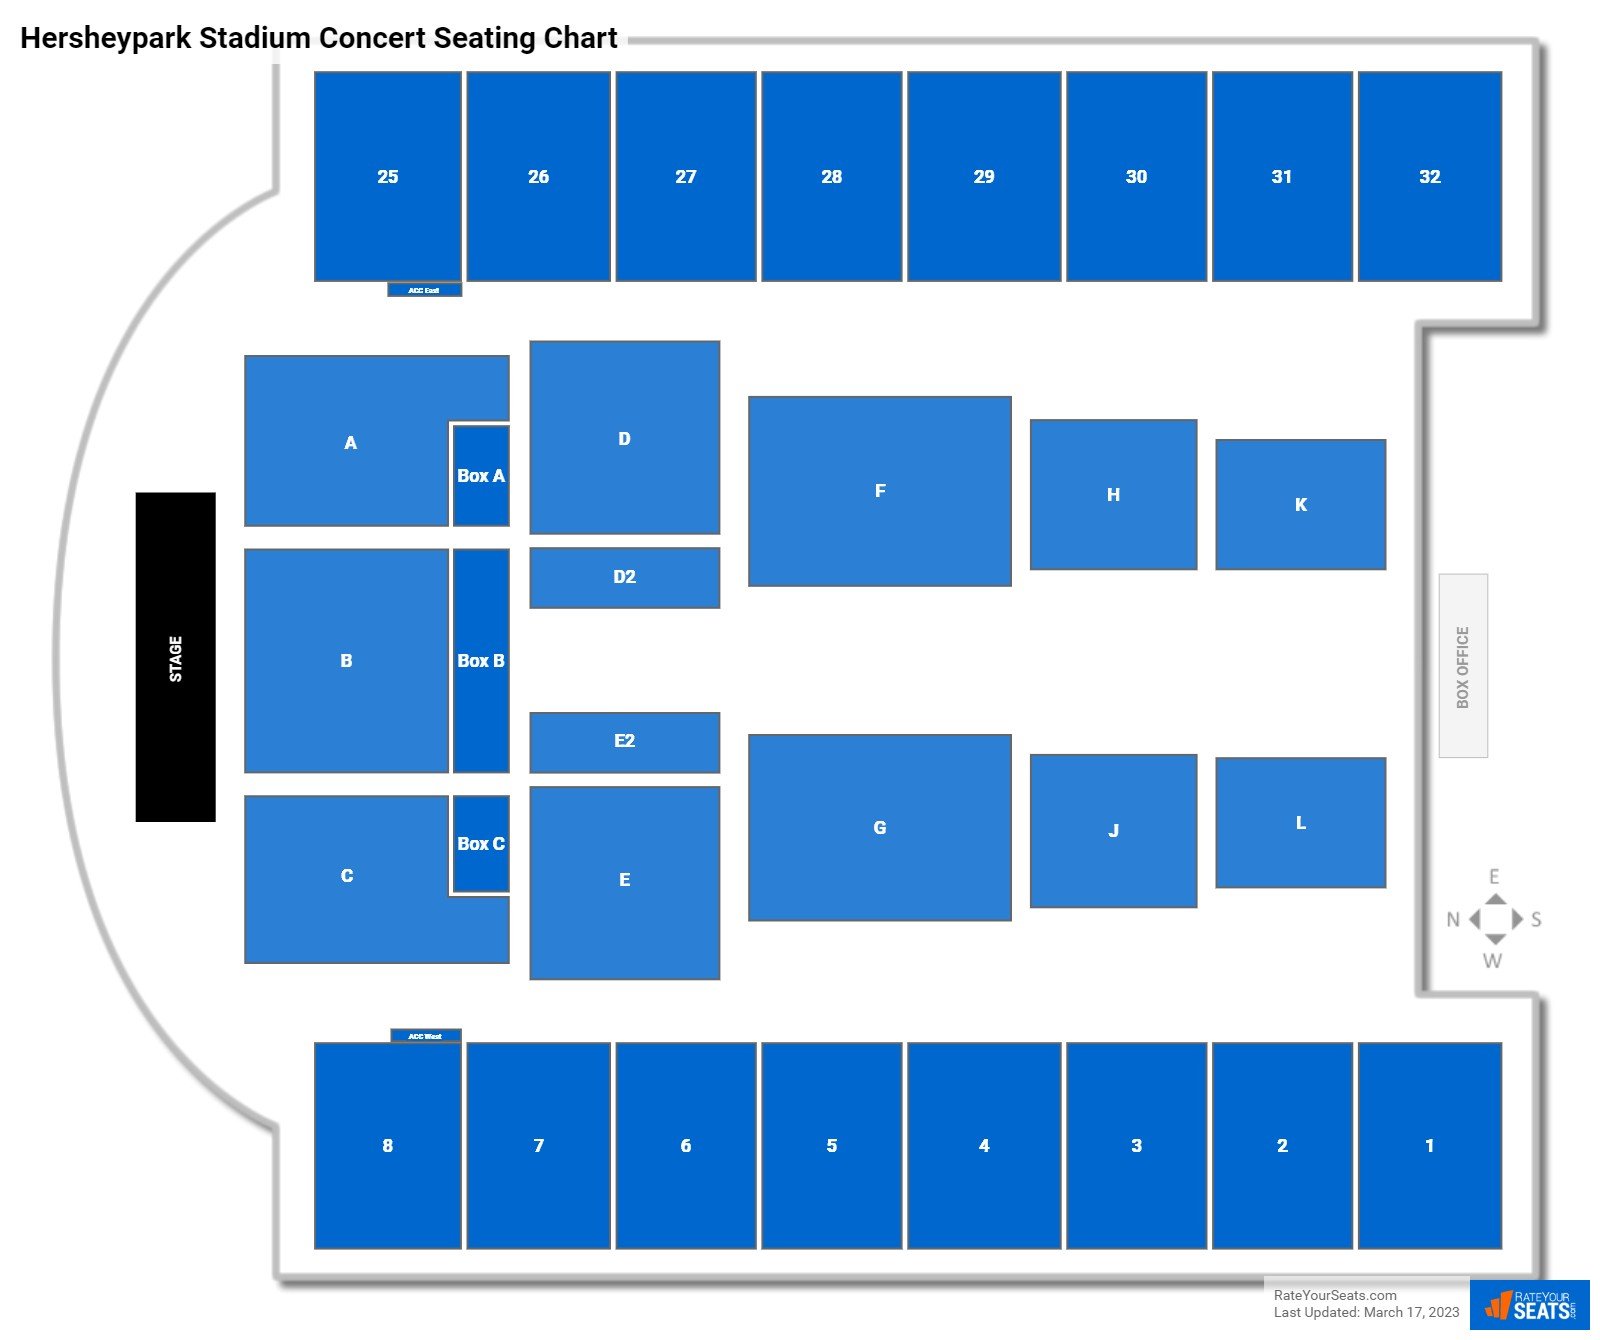 Hersheypark Stadium Seating Chart Rateyourseats Com